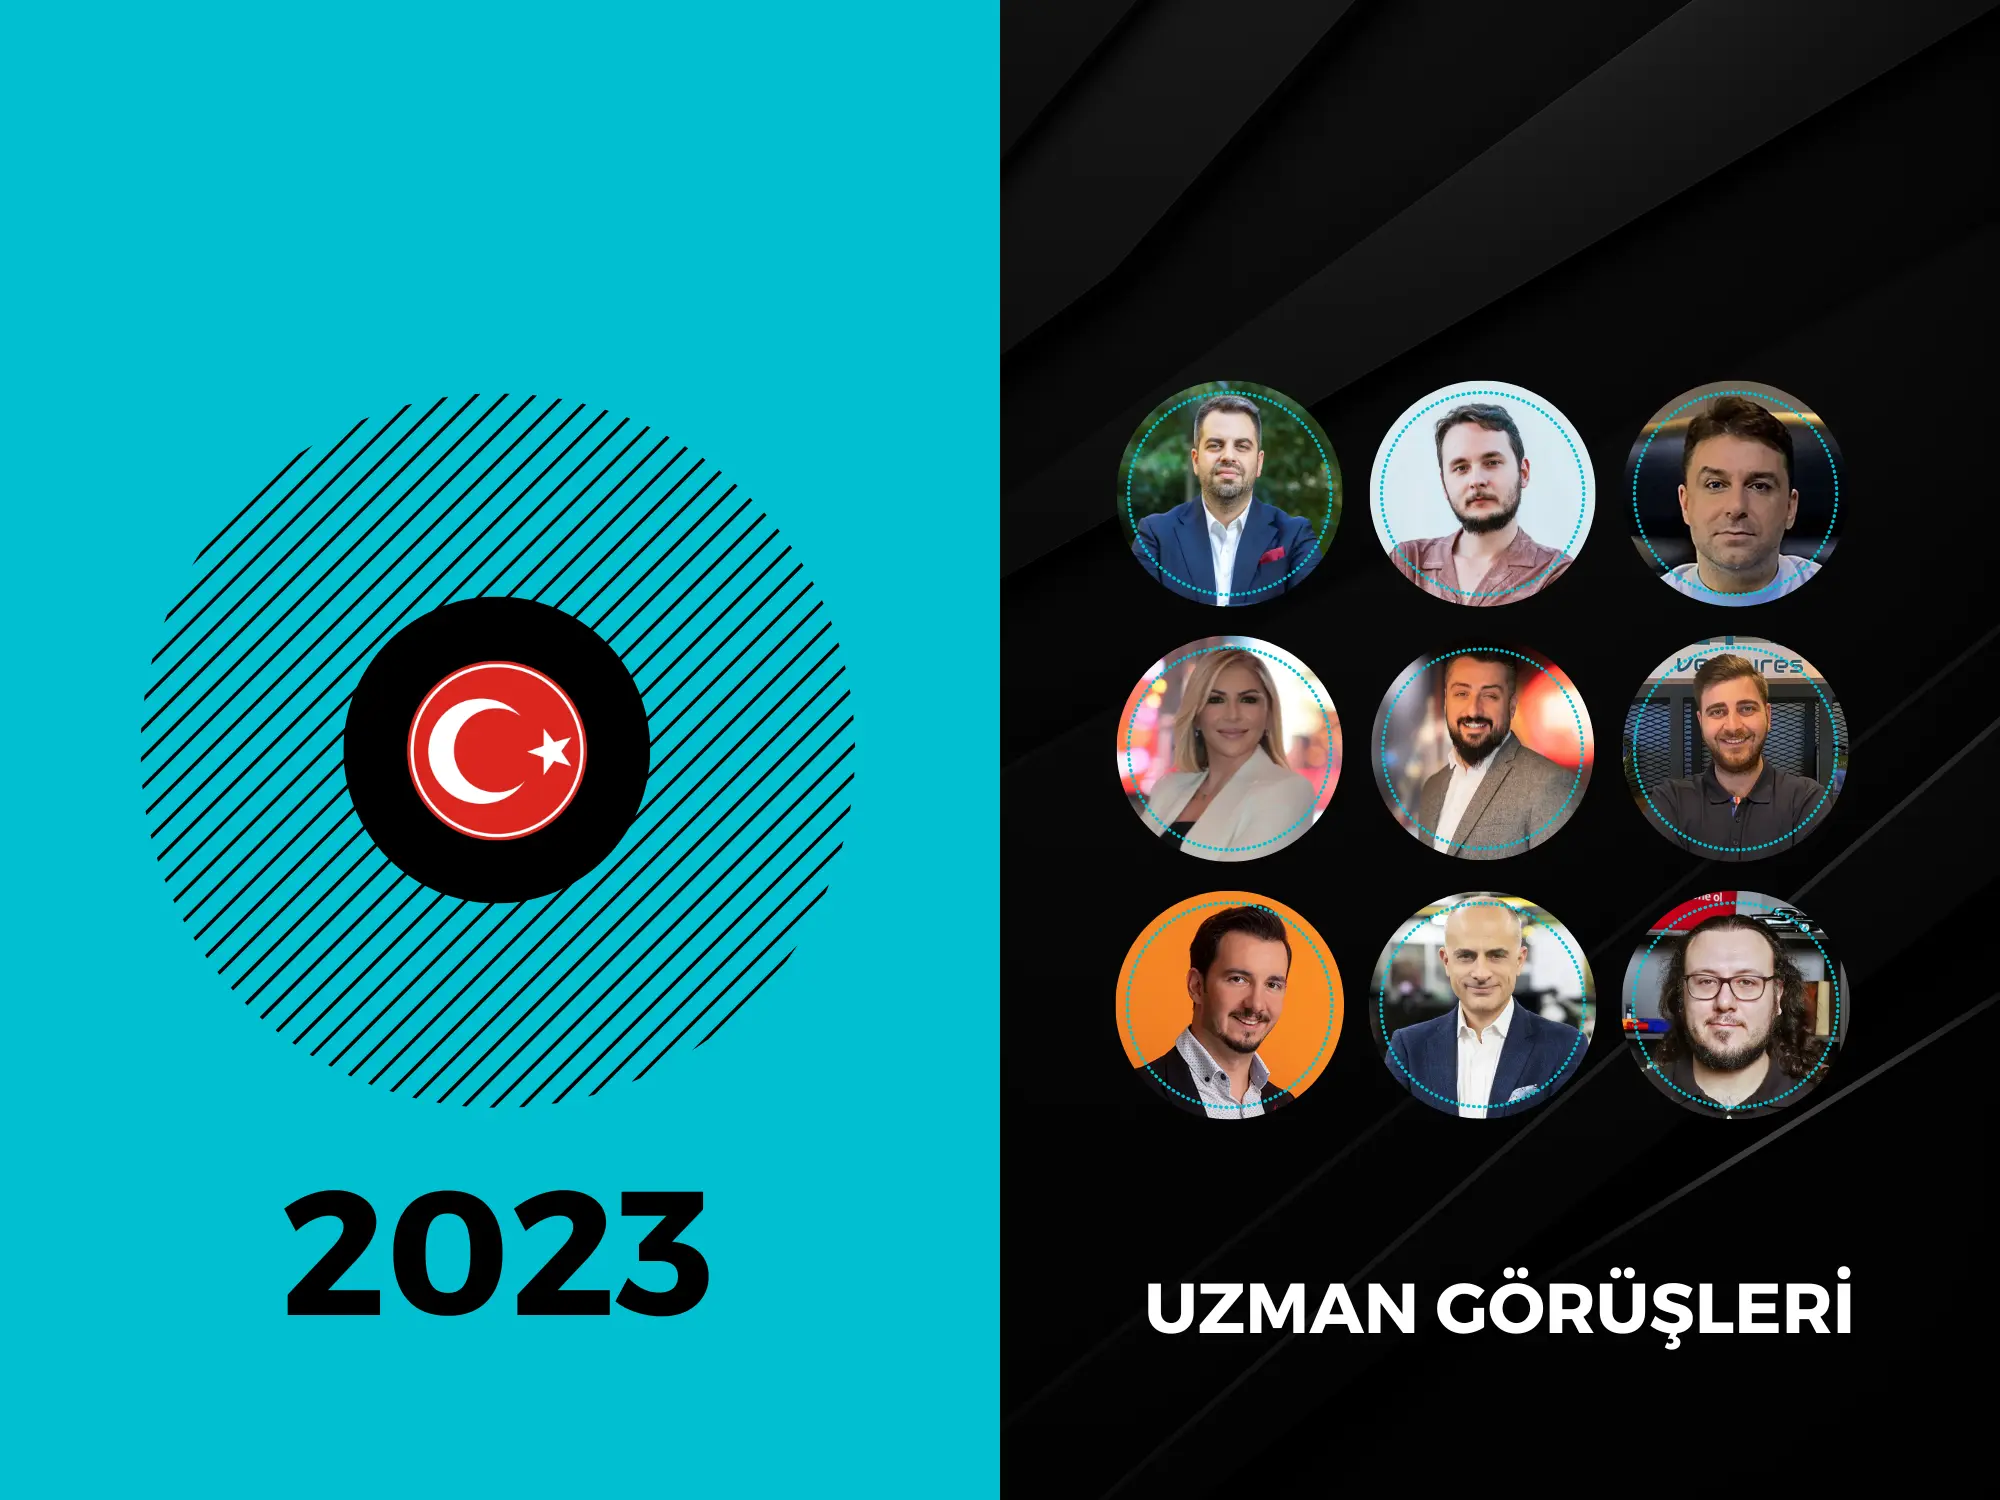 Türkiye Oyun Sektörü Raporu 2023 Yayımlandı!